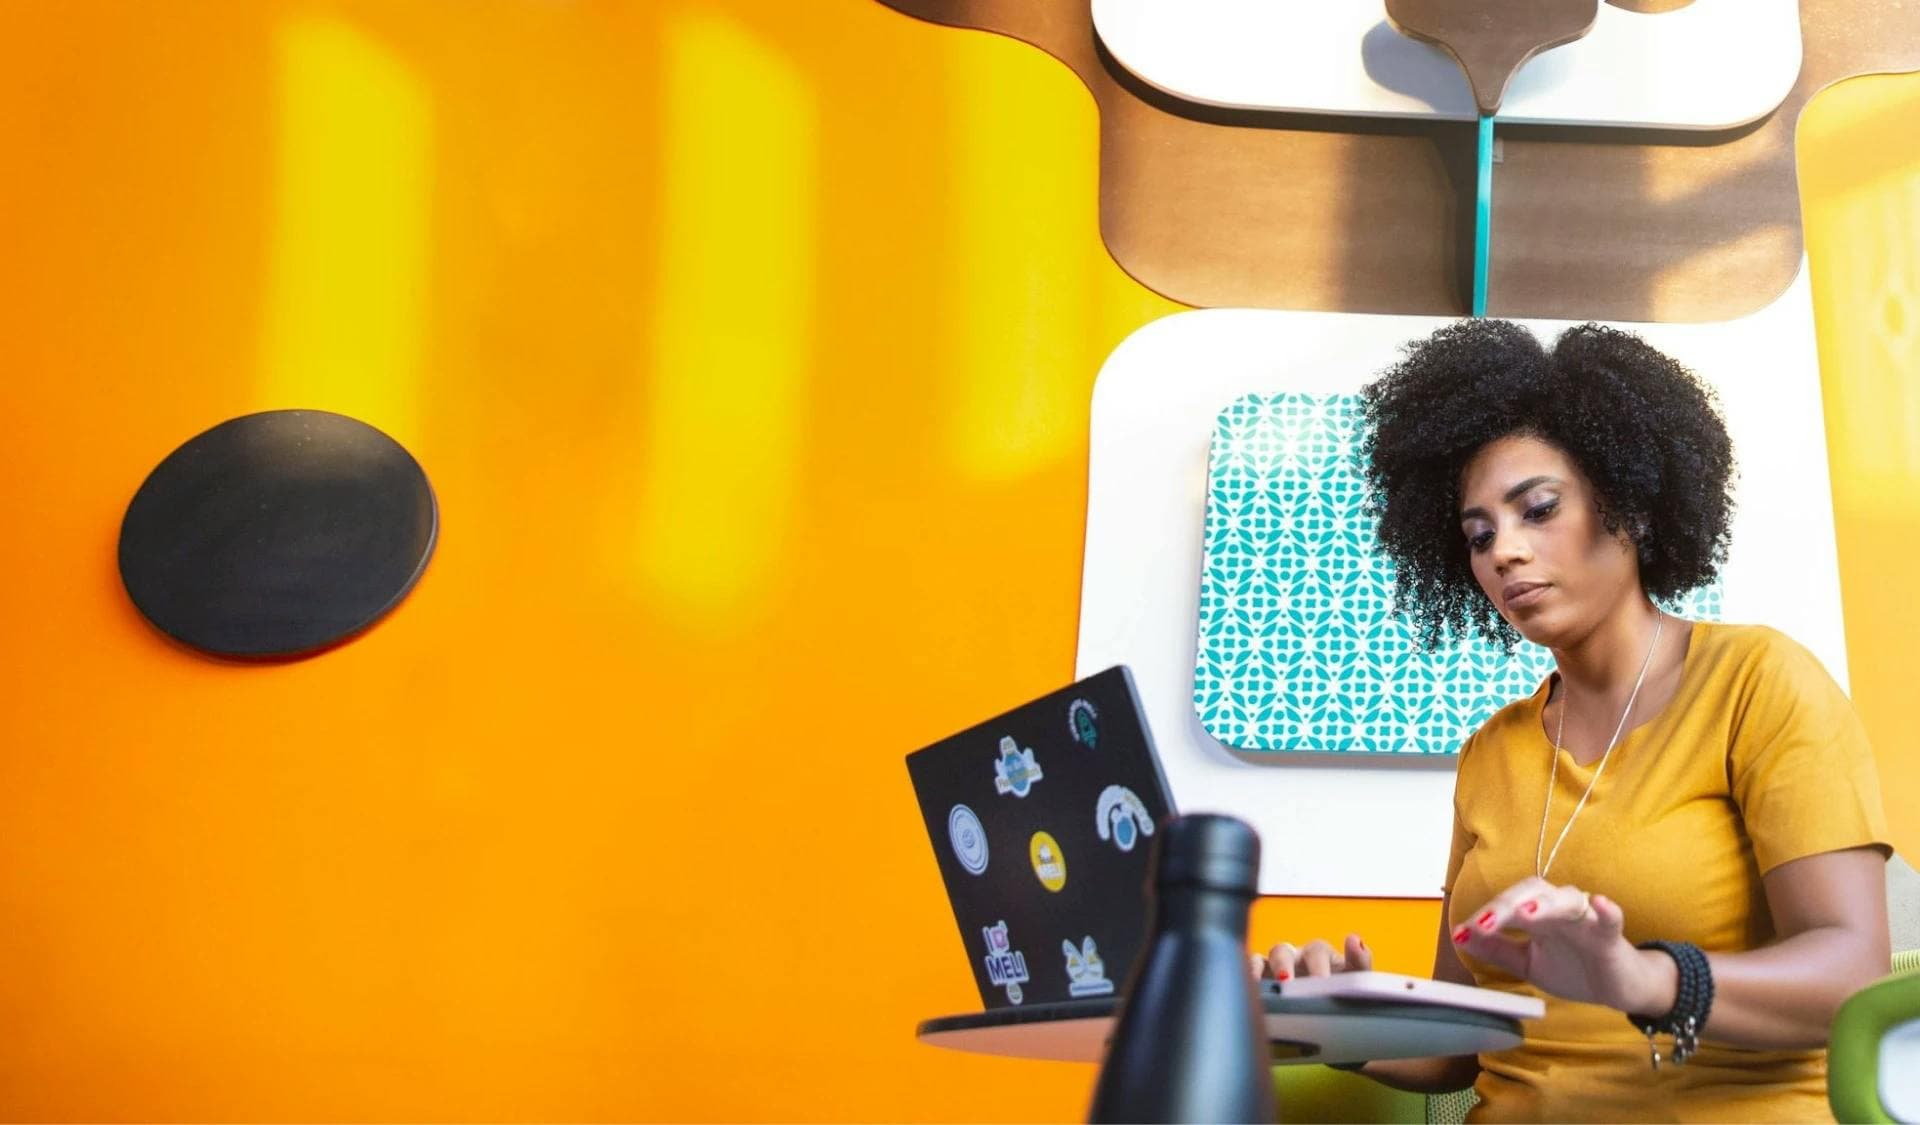 Mujer trabajando en computadora frente a un fondo amarillo.